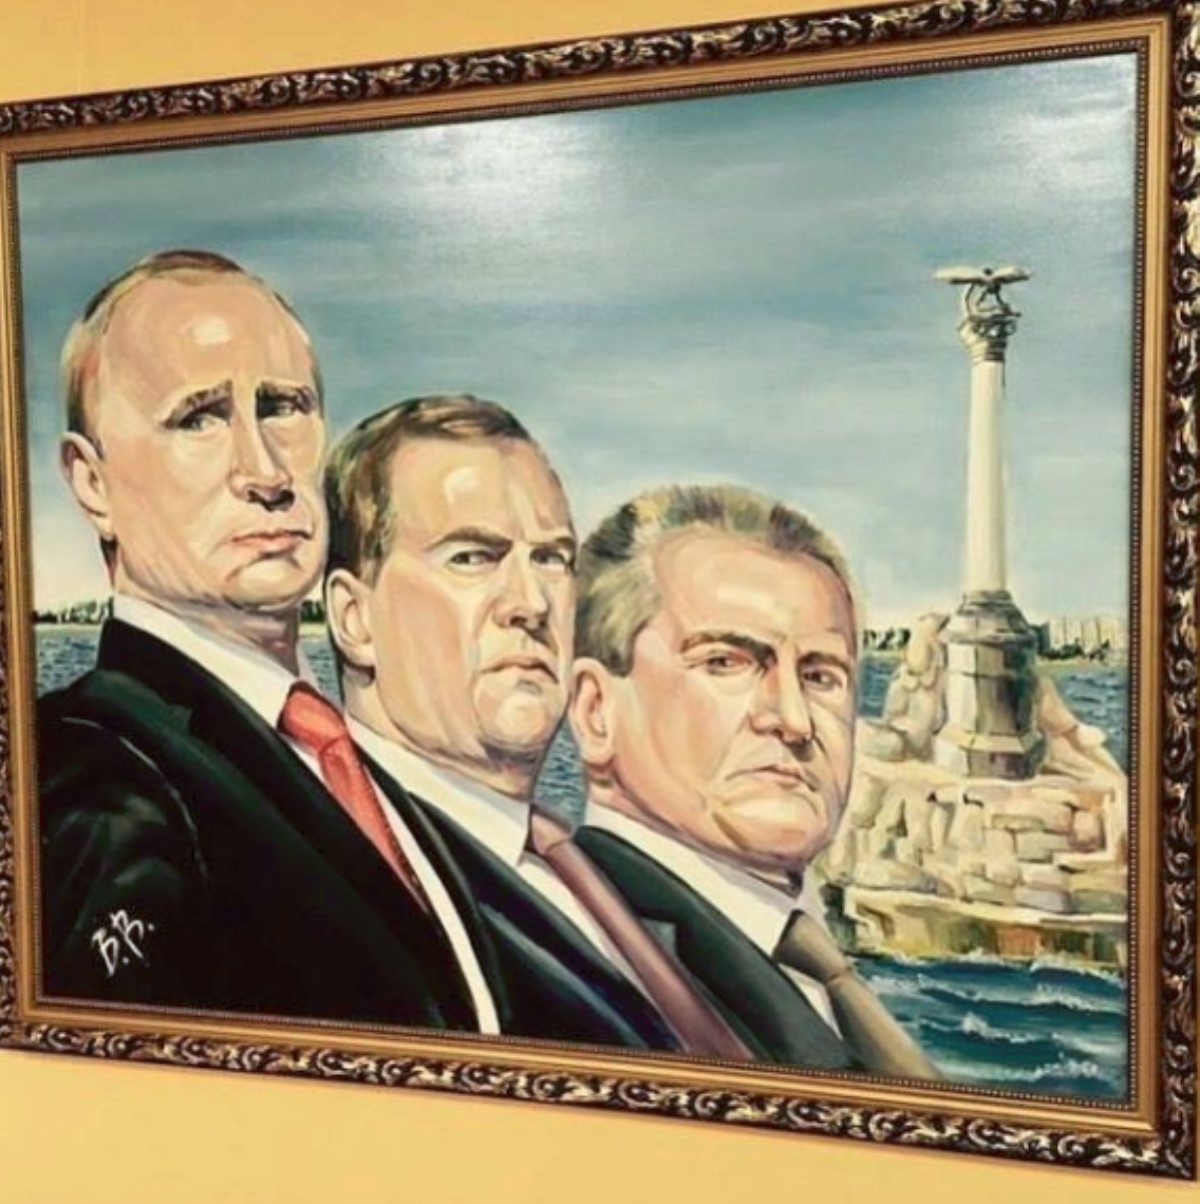 "Отвратительные рожи": в сети высмеяли крымский портрет Путина и Медведева